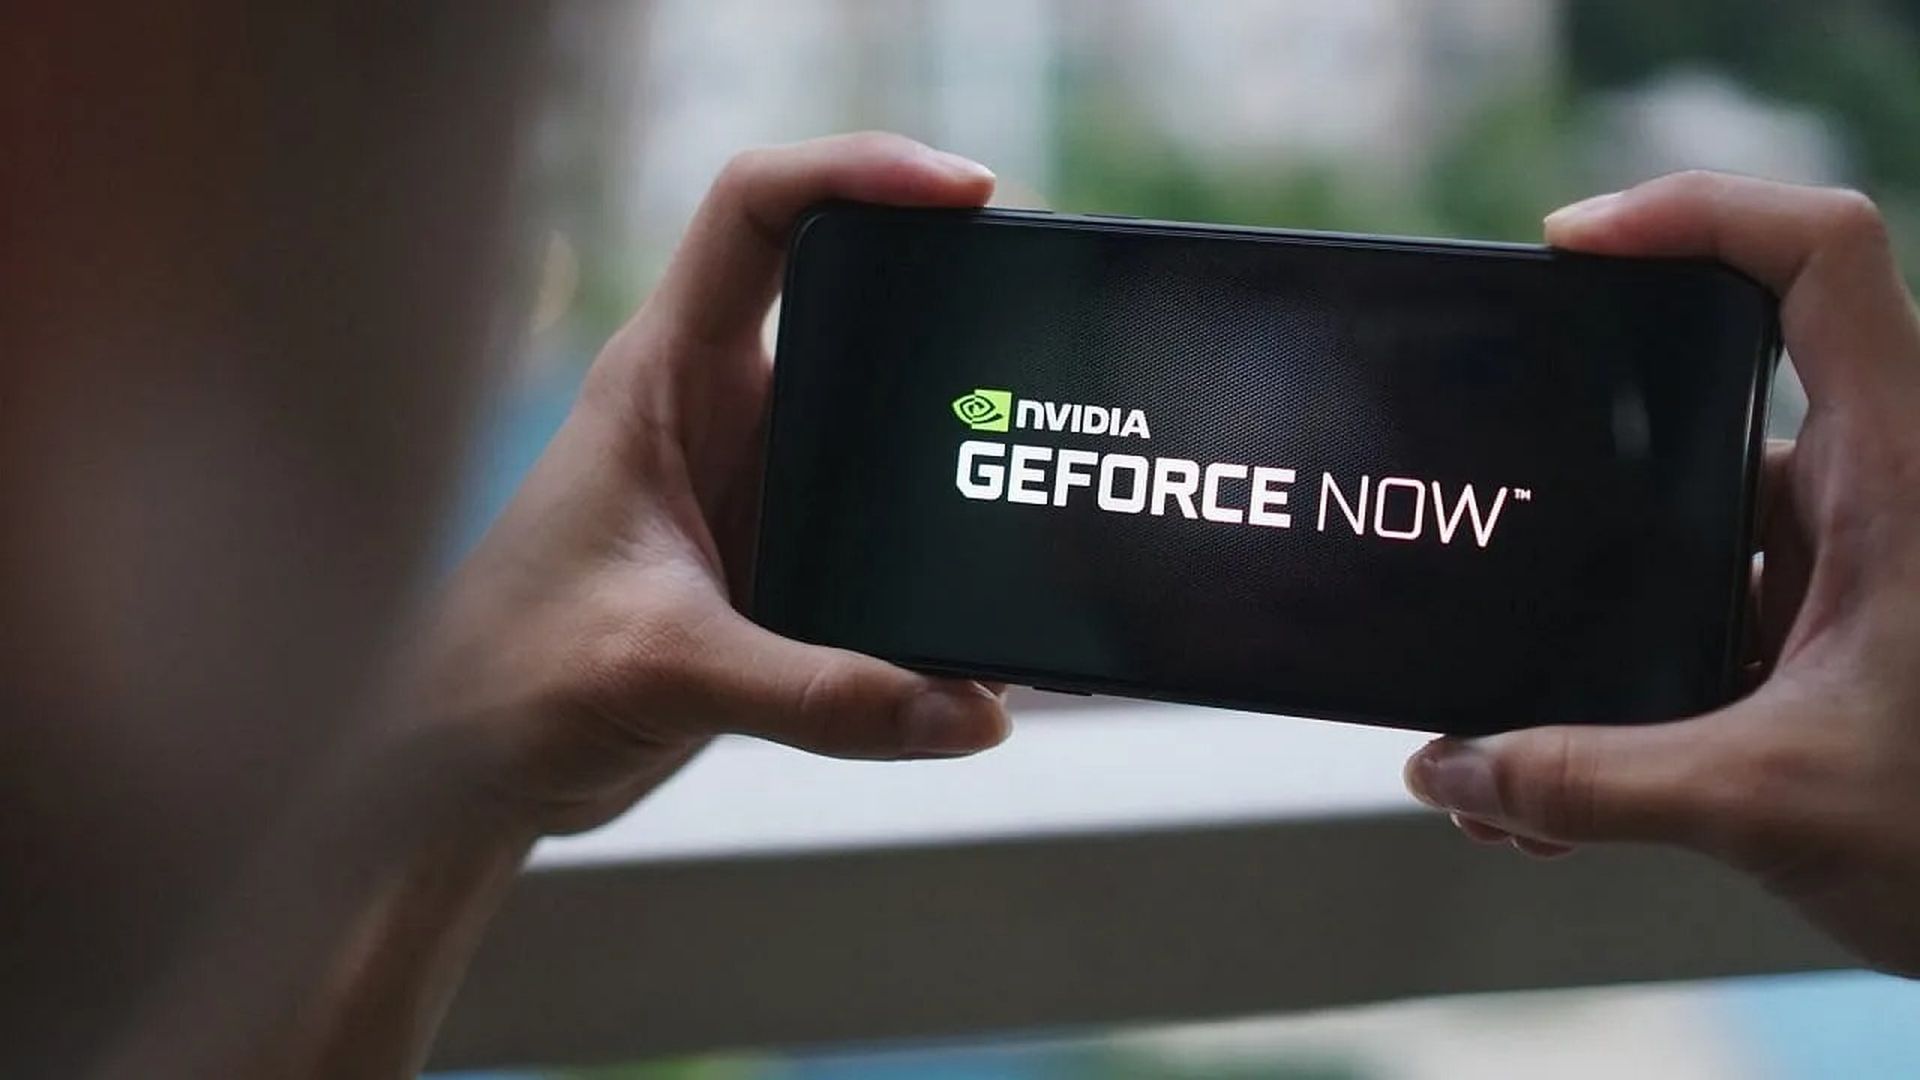 Wreszcie długo oczekiwana obsługa Geforce Now M1 jest już dostępna z aktualizacją.  Nvidia zmodernizowała swoją usługę gier w chmurze GeForce Now, aby obsługiwać natywnie wiele komputerów z Apple M1.